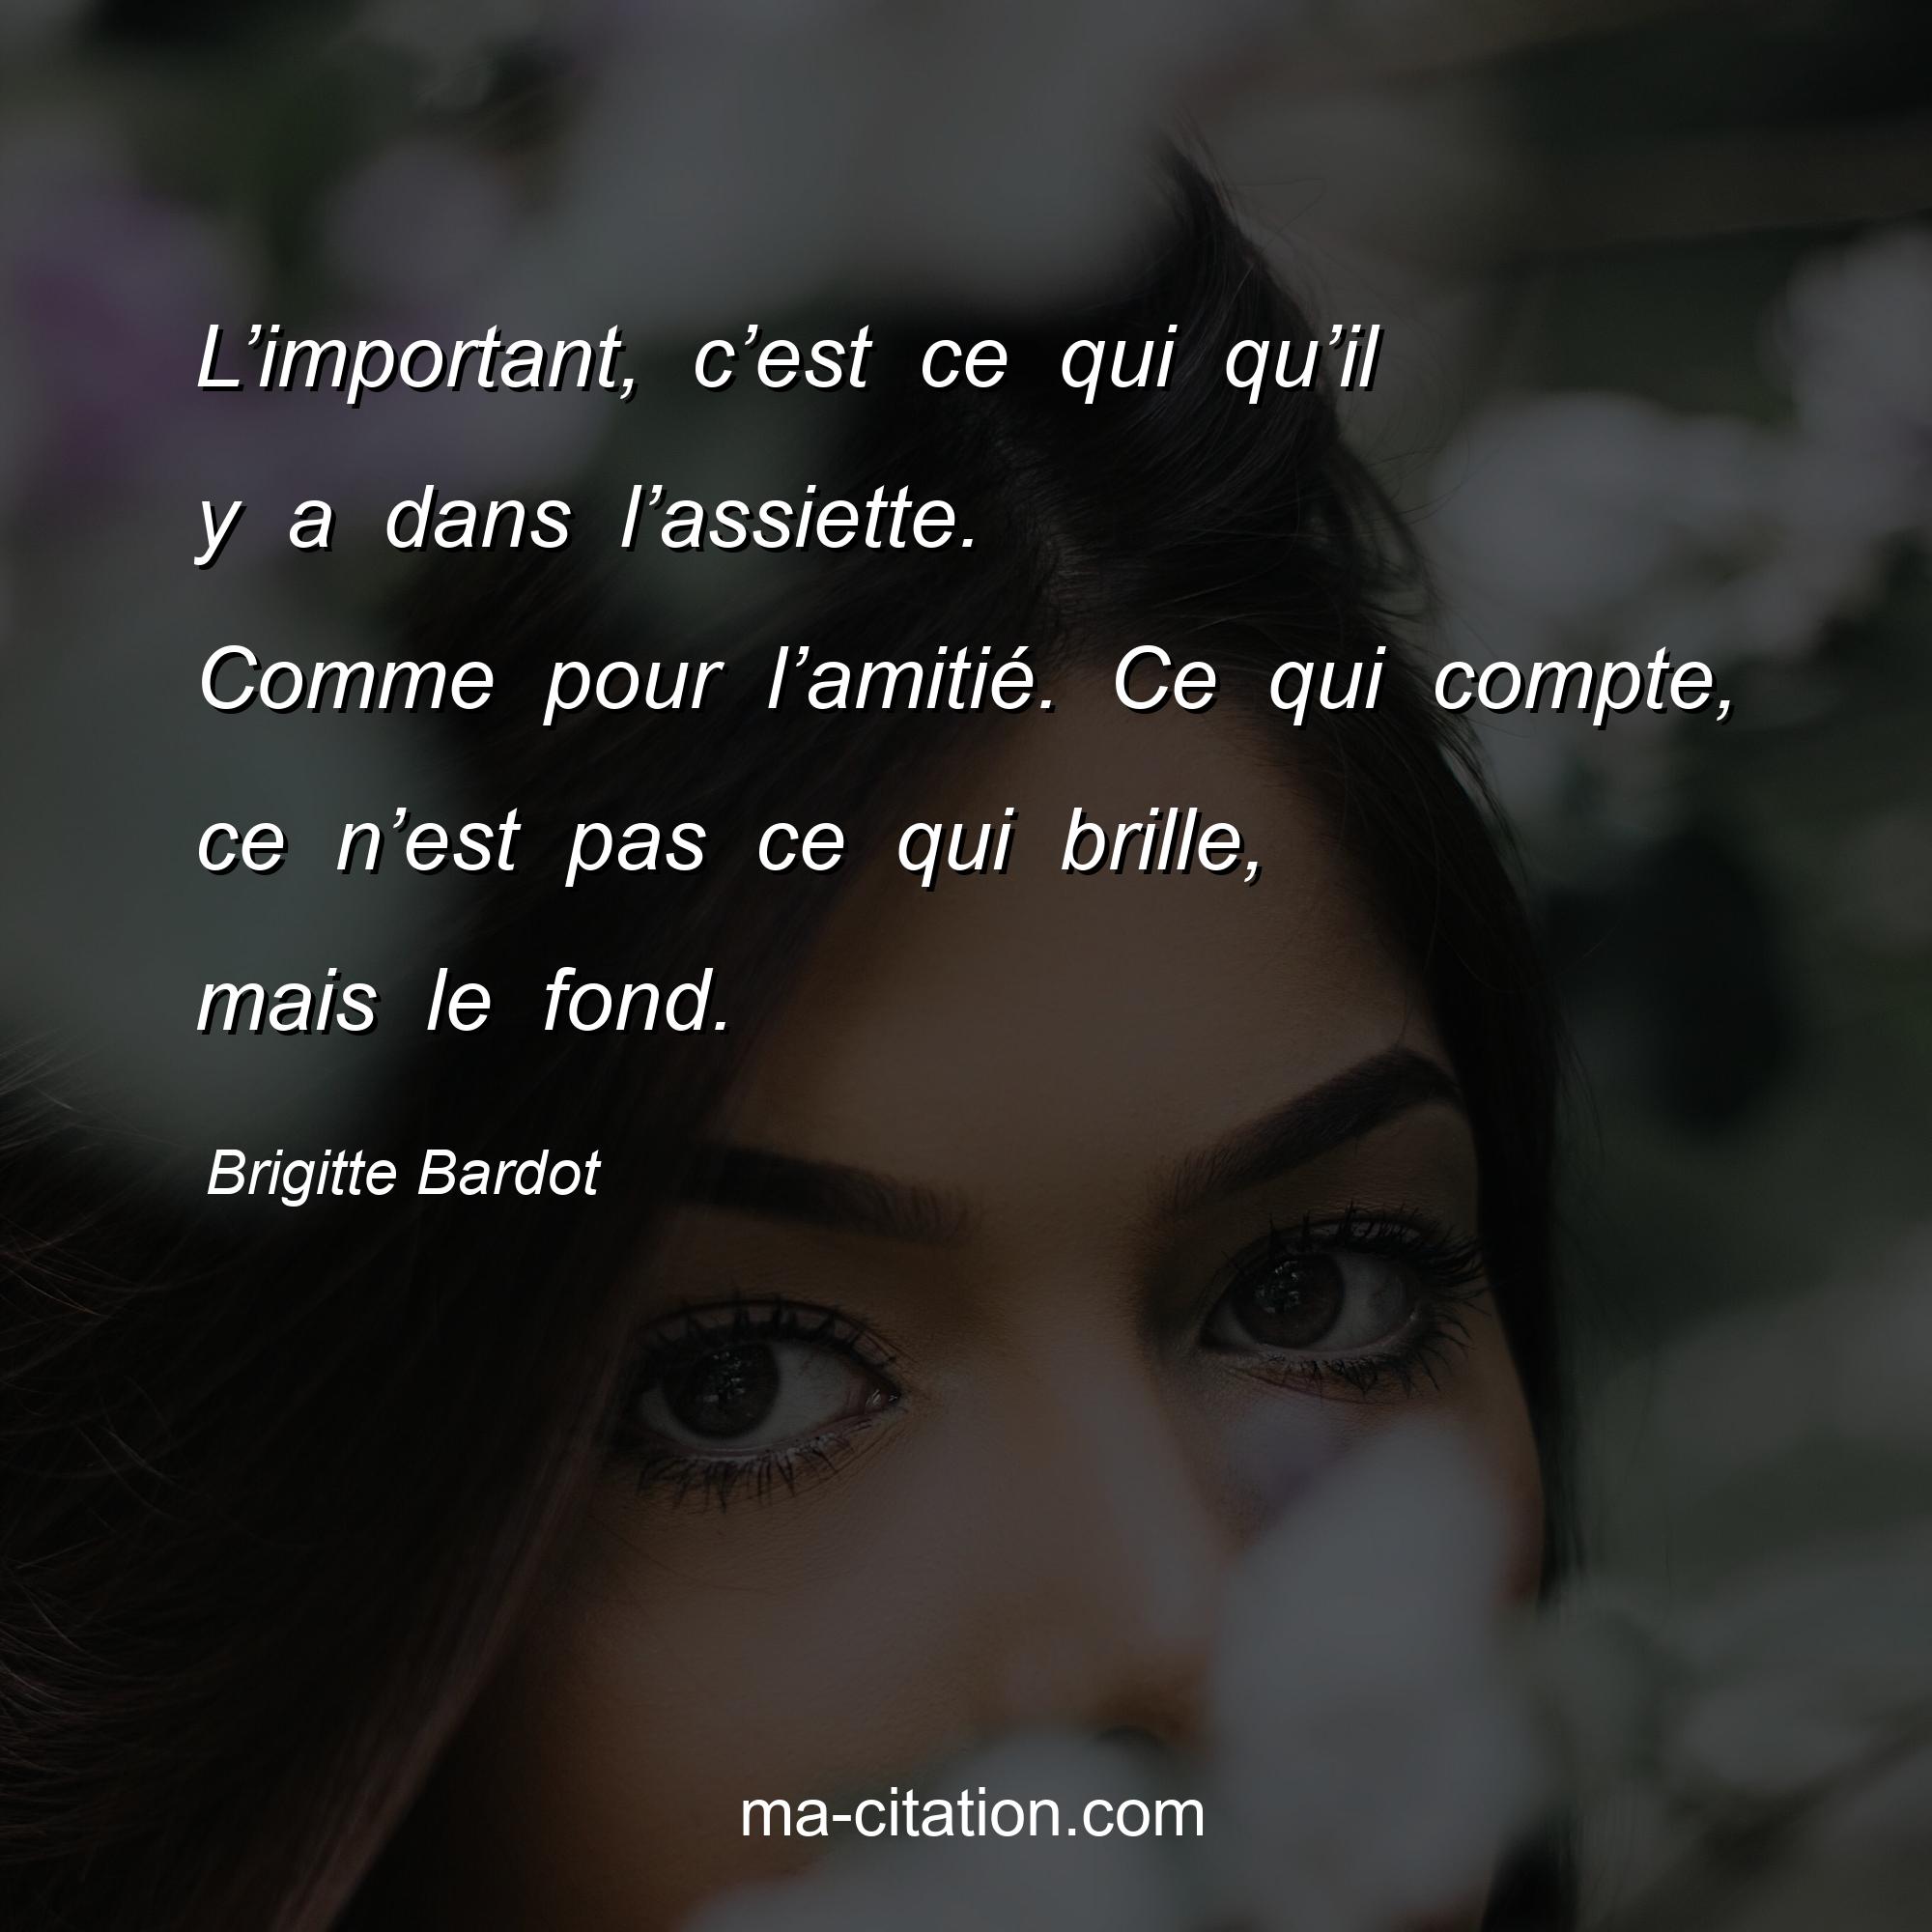 Brigitte Bardot : L’important, c’est ce qui qu’il y a dans l’assiette. Comme pour l’amitié. Ce qui compte, ce n’est pas ce qui brille, mais le fond.